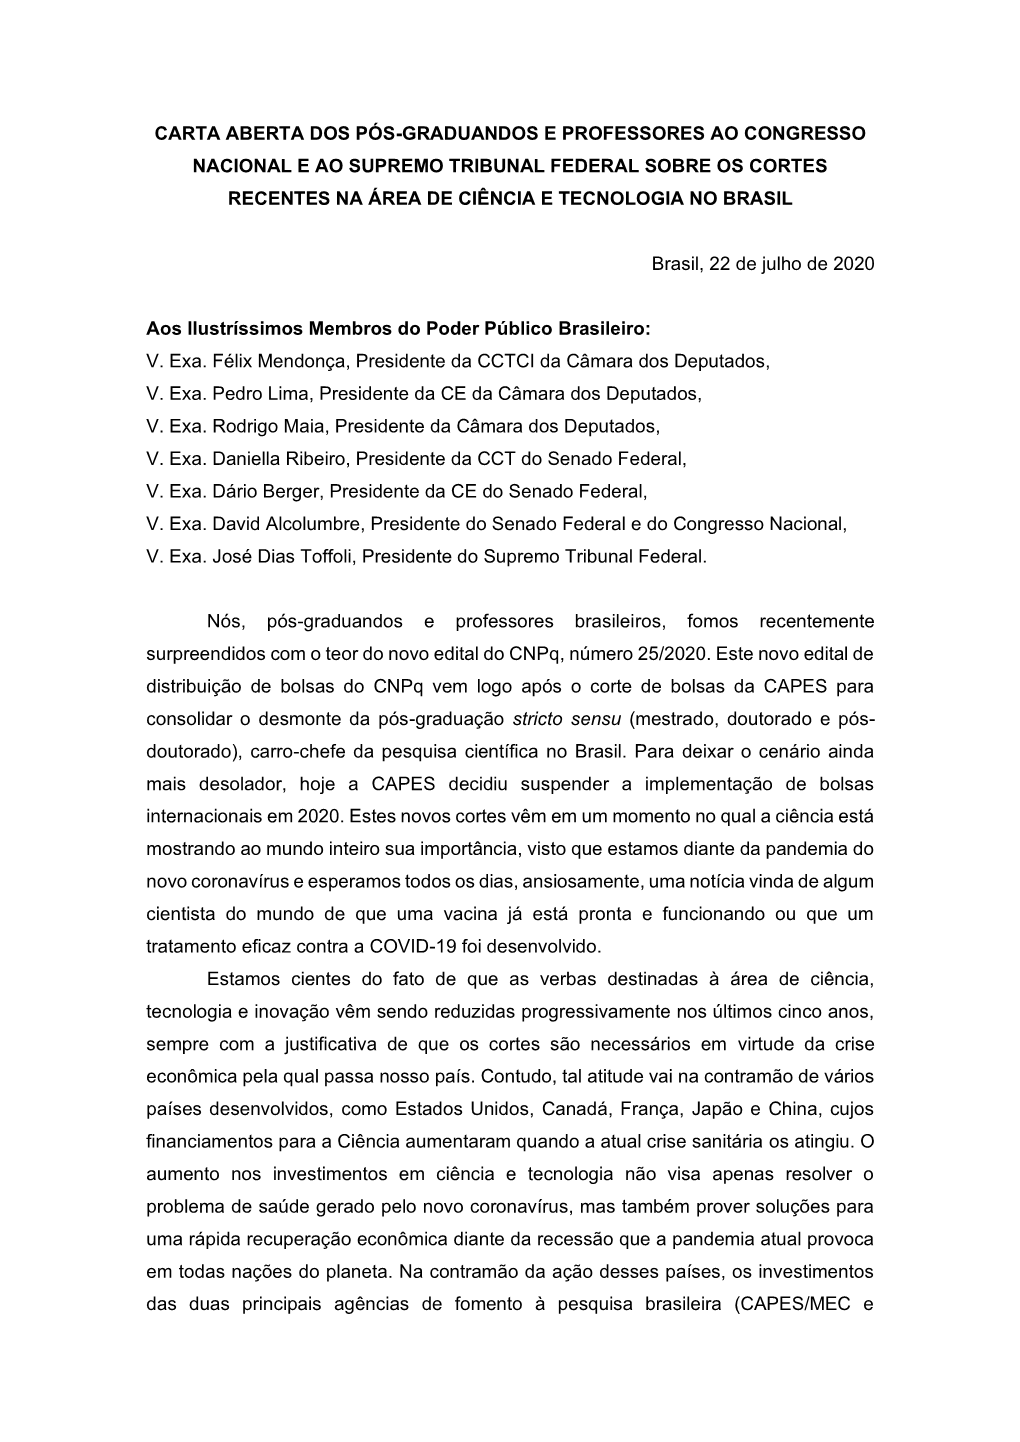 Carta Aberta Dos Pós-Graduandos E Professores Ao Congresso Nacional E Ao Supremo Tribunal Federal Sobre Os Cortes Recentes Na Área De Ciência E Tecnologia No Brasil